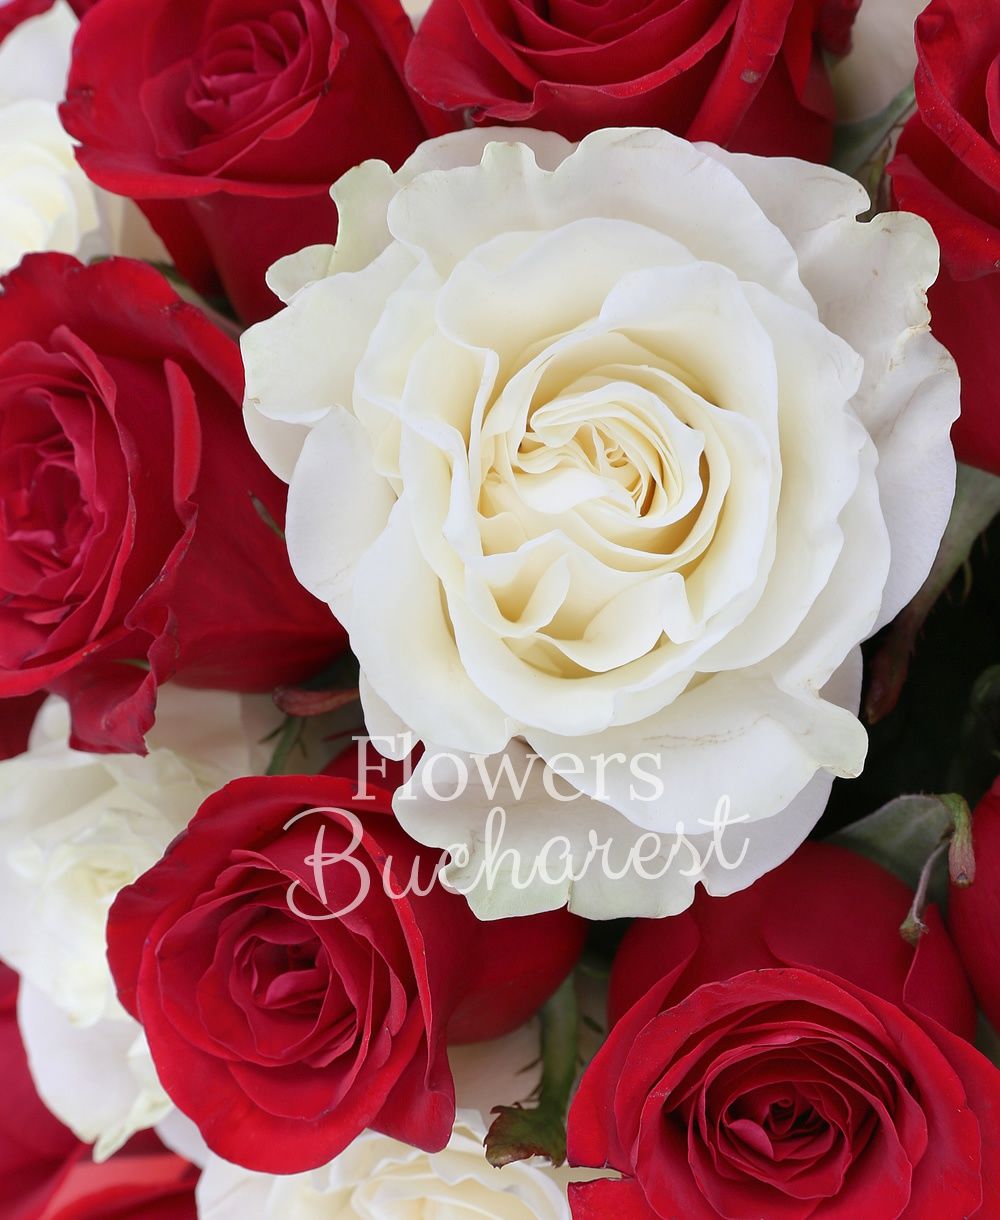 10 white roses, 25 red roses